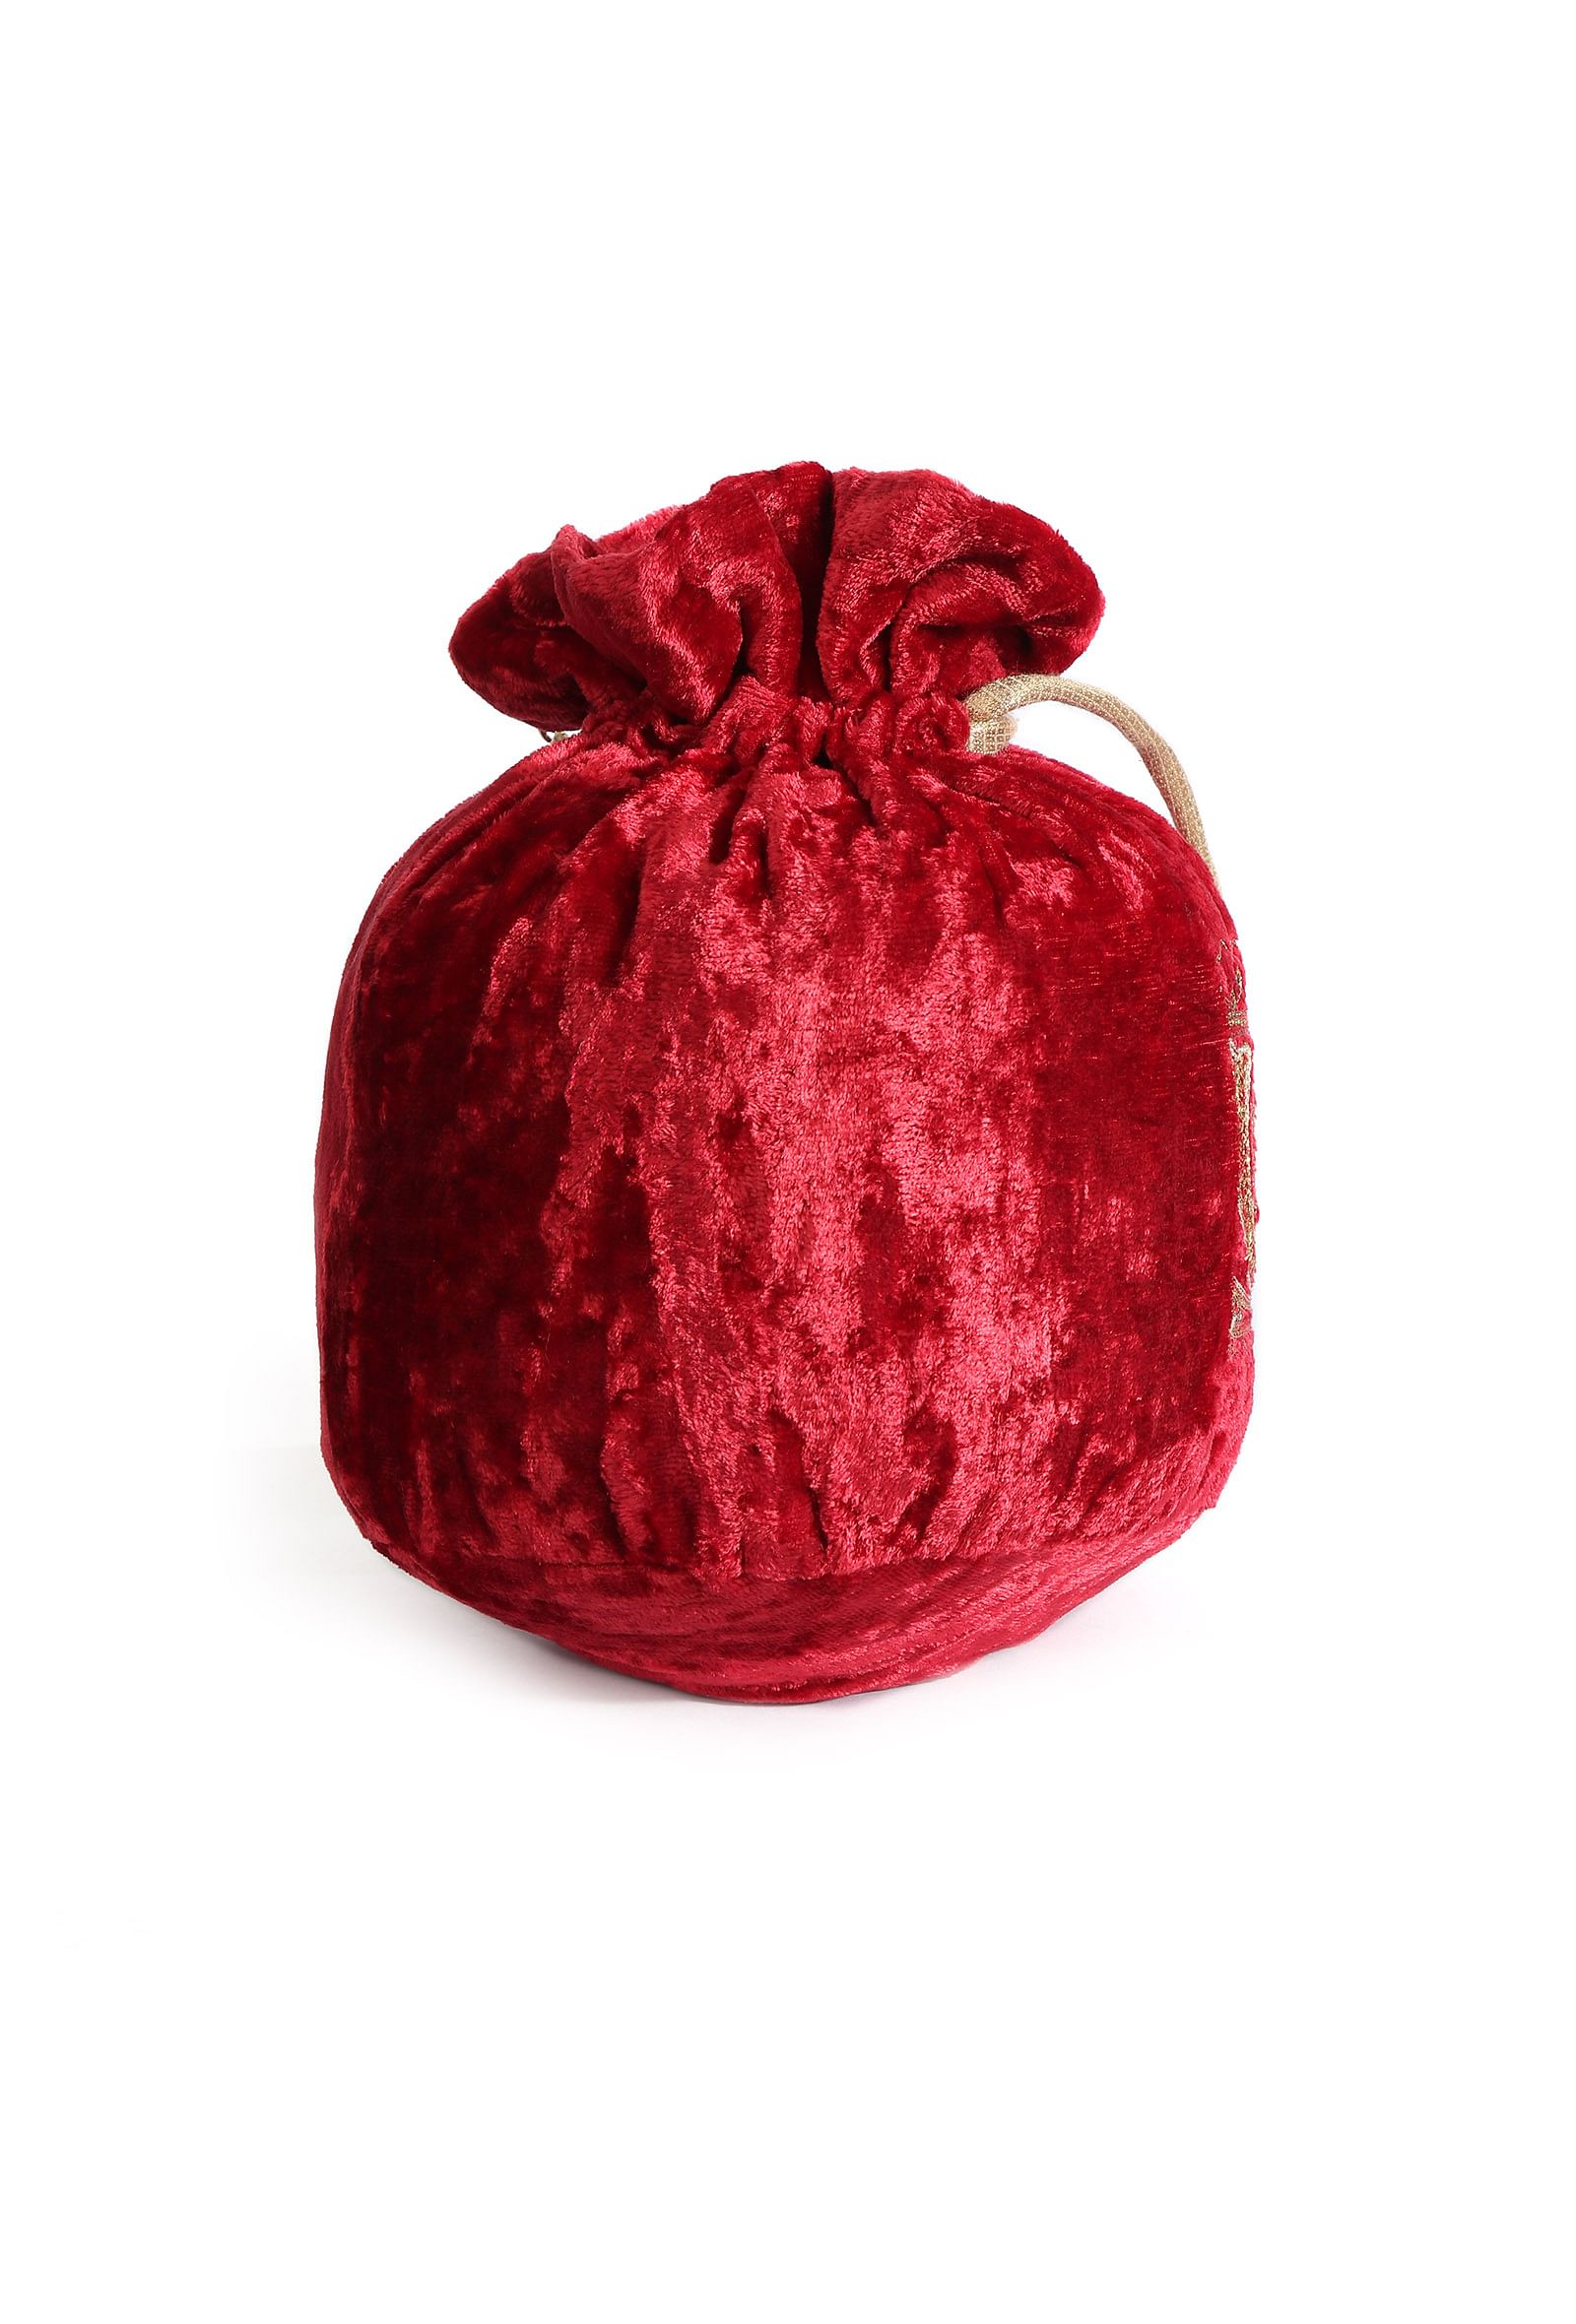 Cherry Red Velvet Tila Embroidery Potli